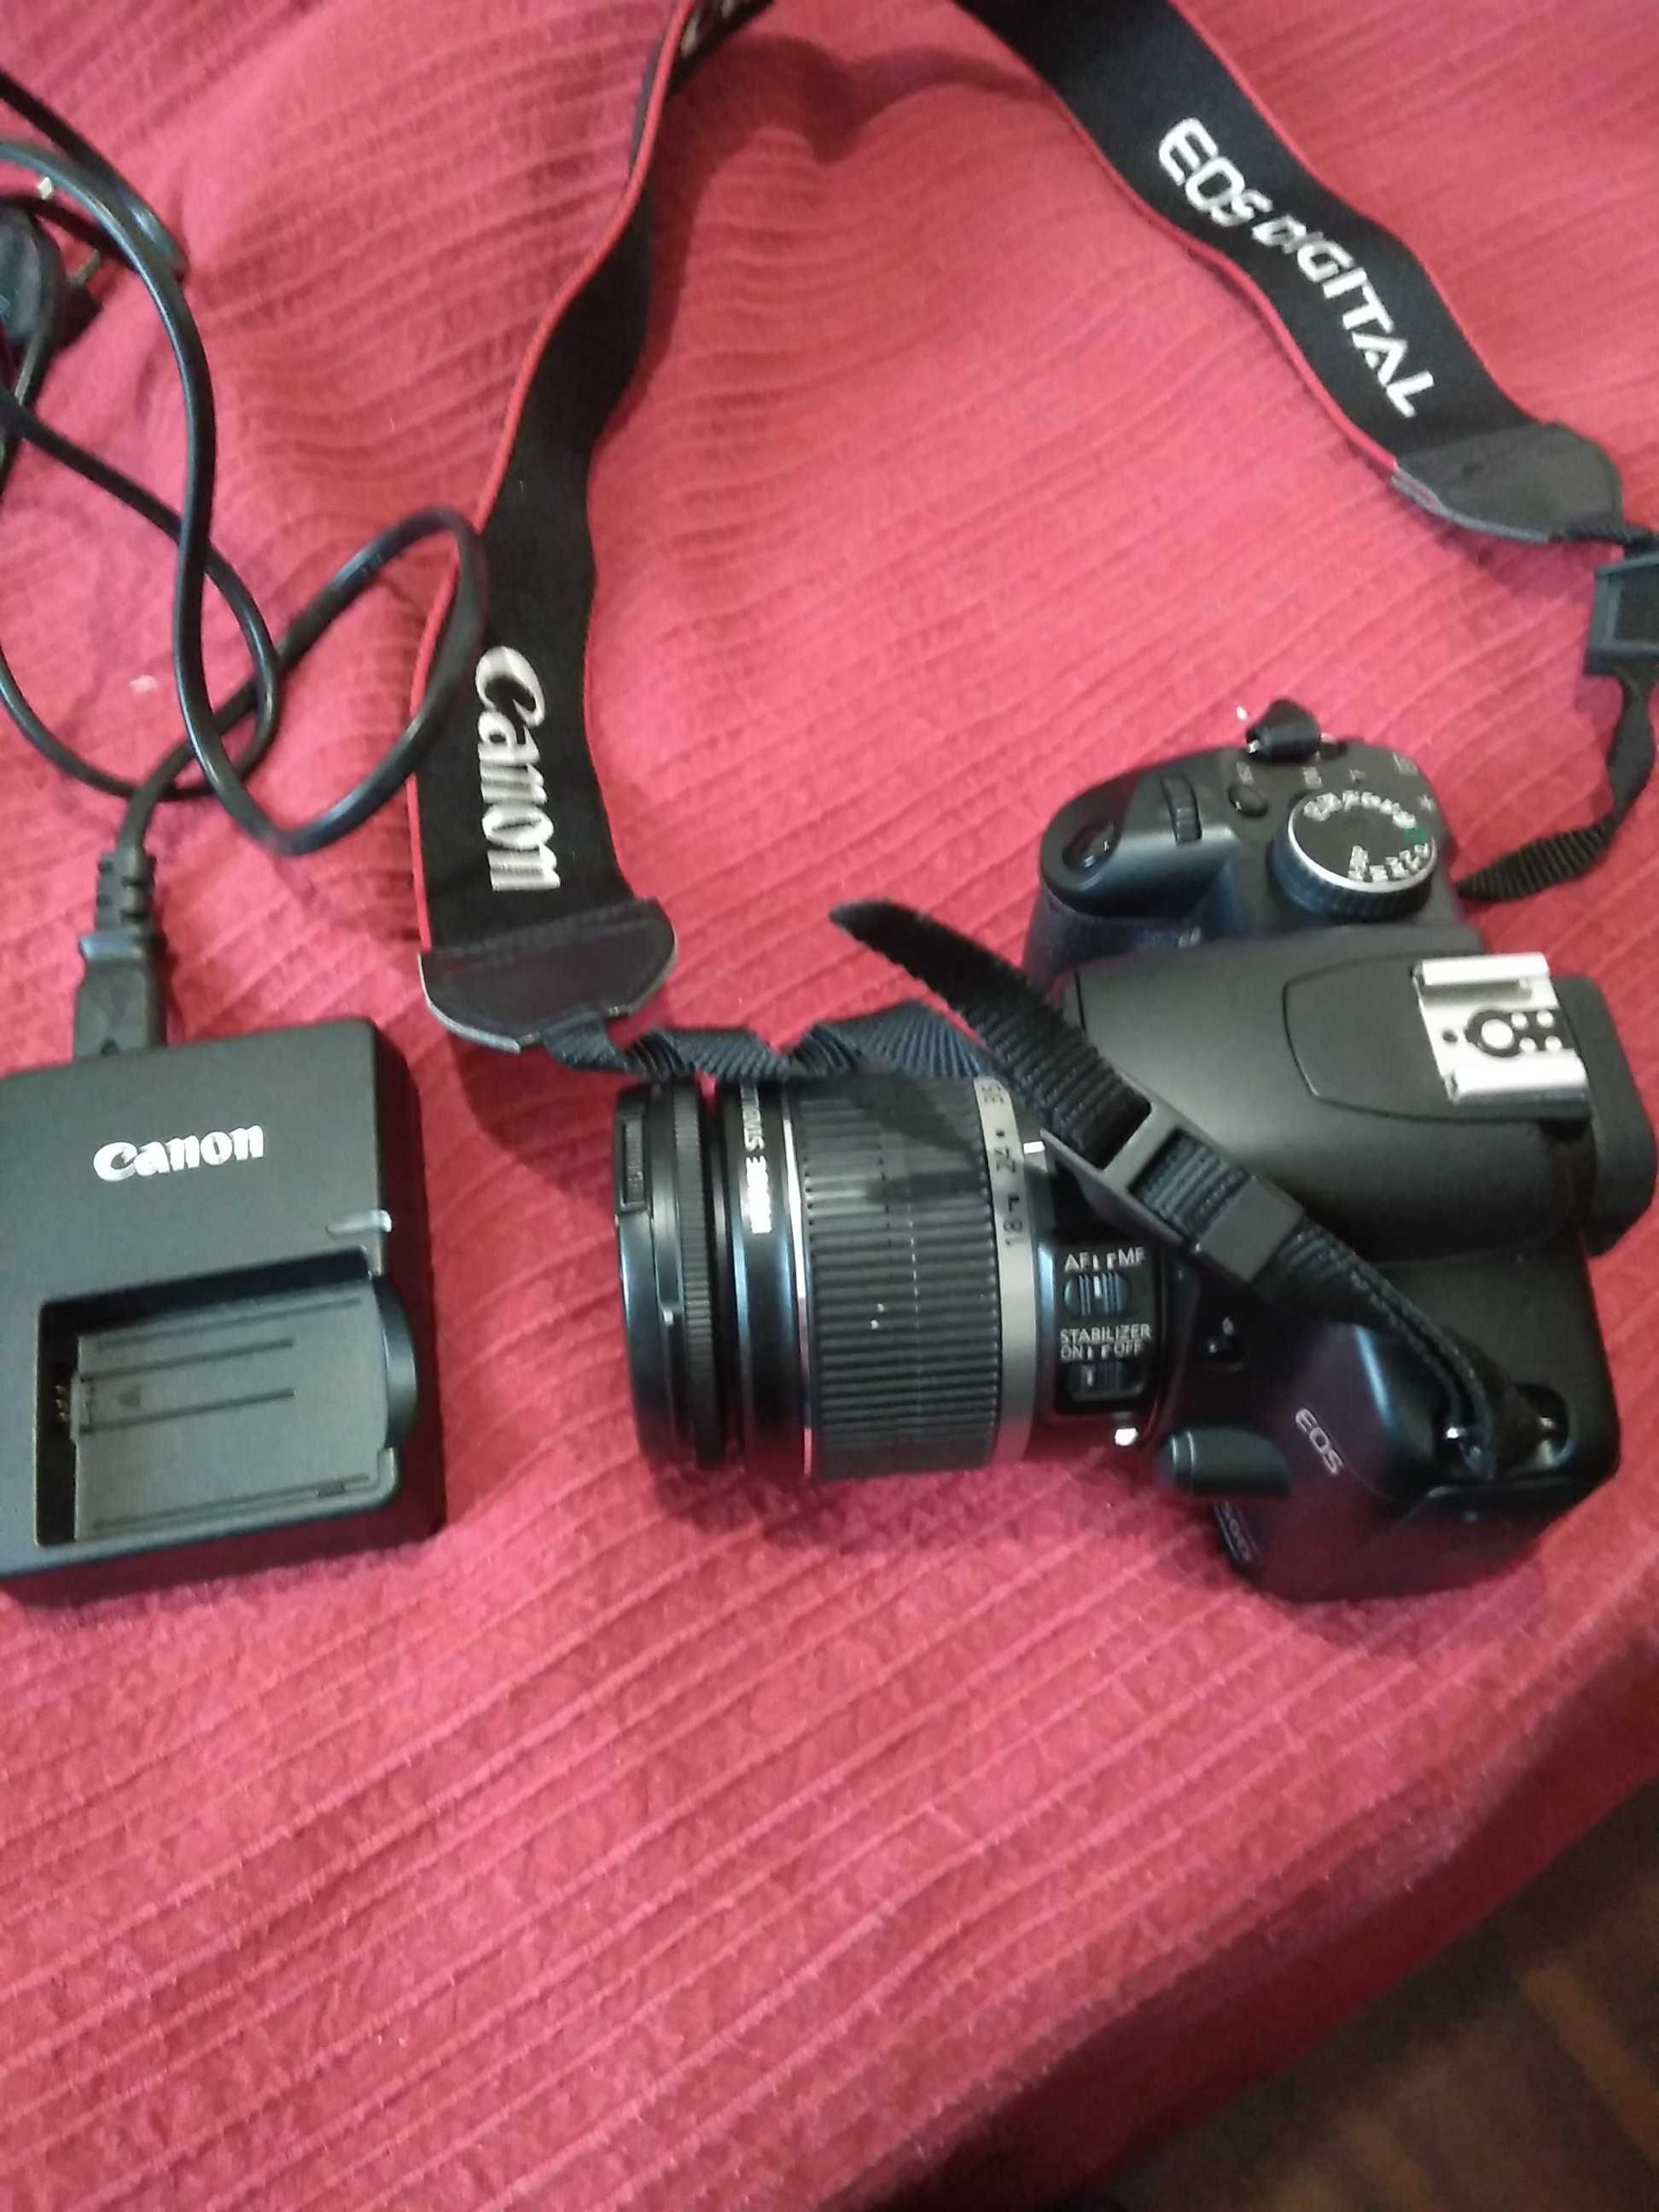 Canon 450D + Canon EFS 18-55mm + bateria + carregador